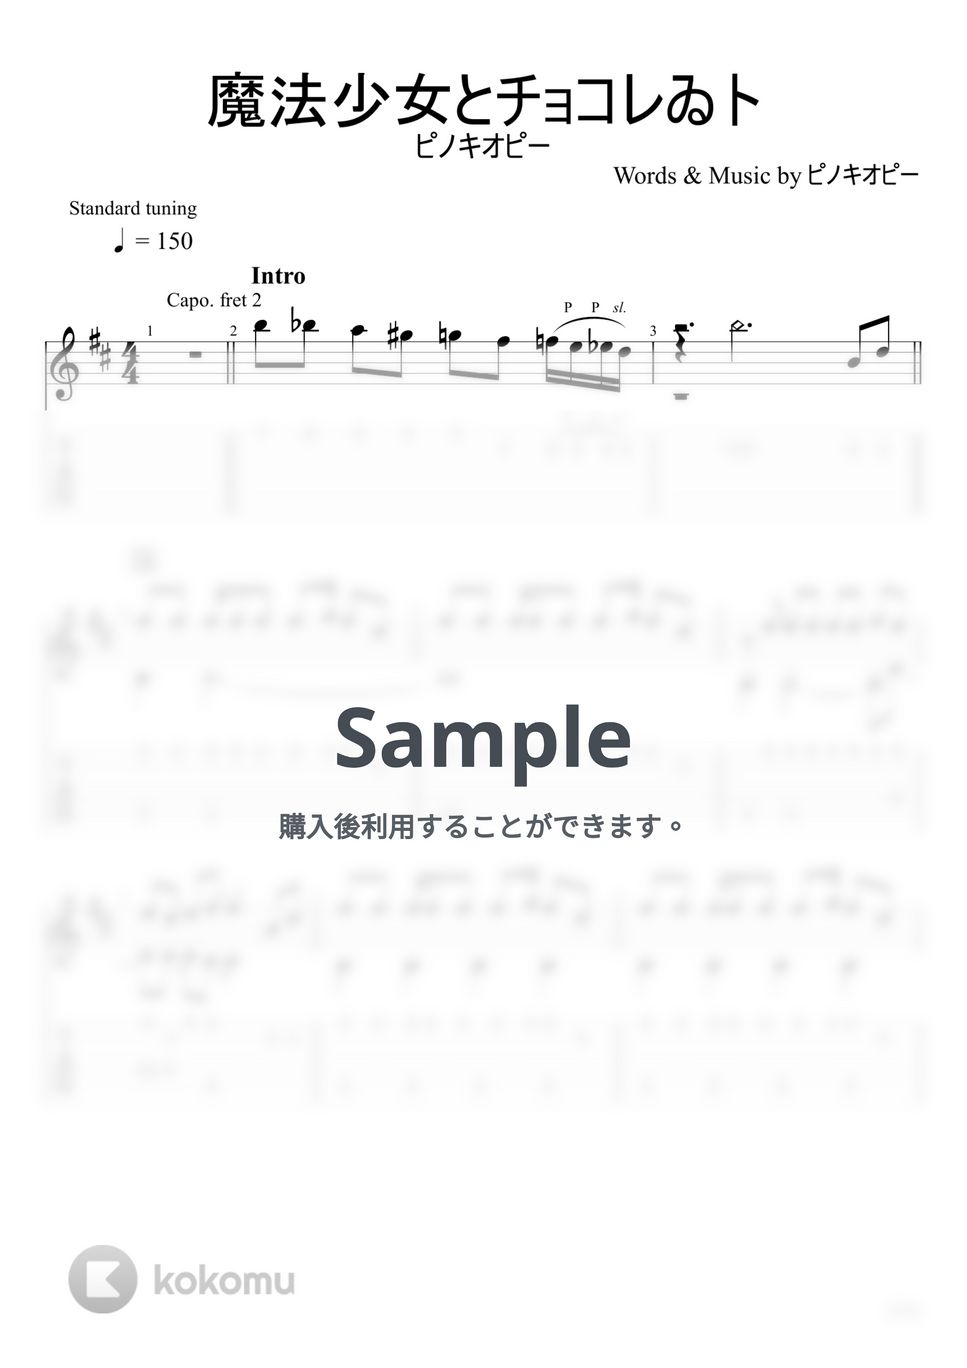 ピノキオピー - 魔法少女とチョコレゐト (ソロギター) by u3danchou